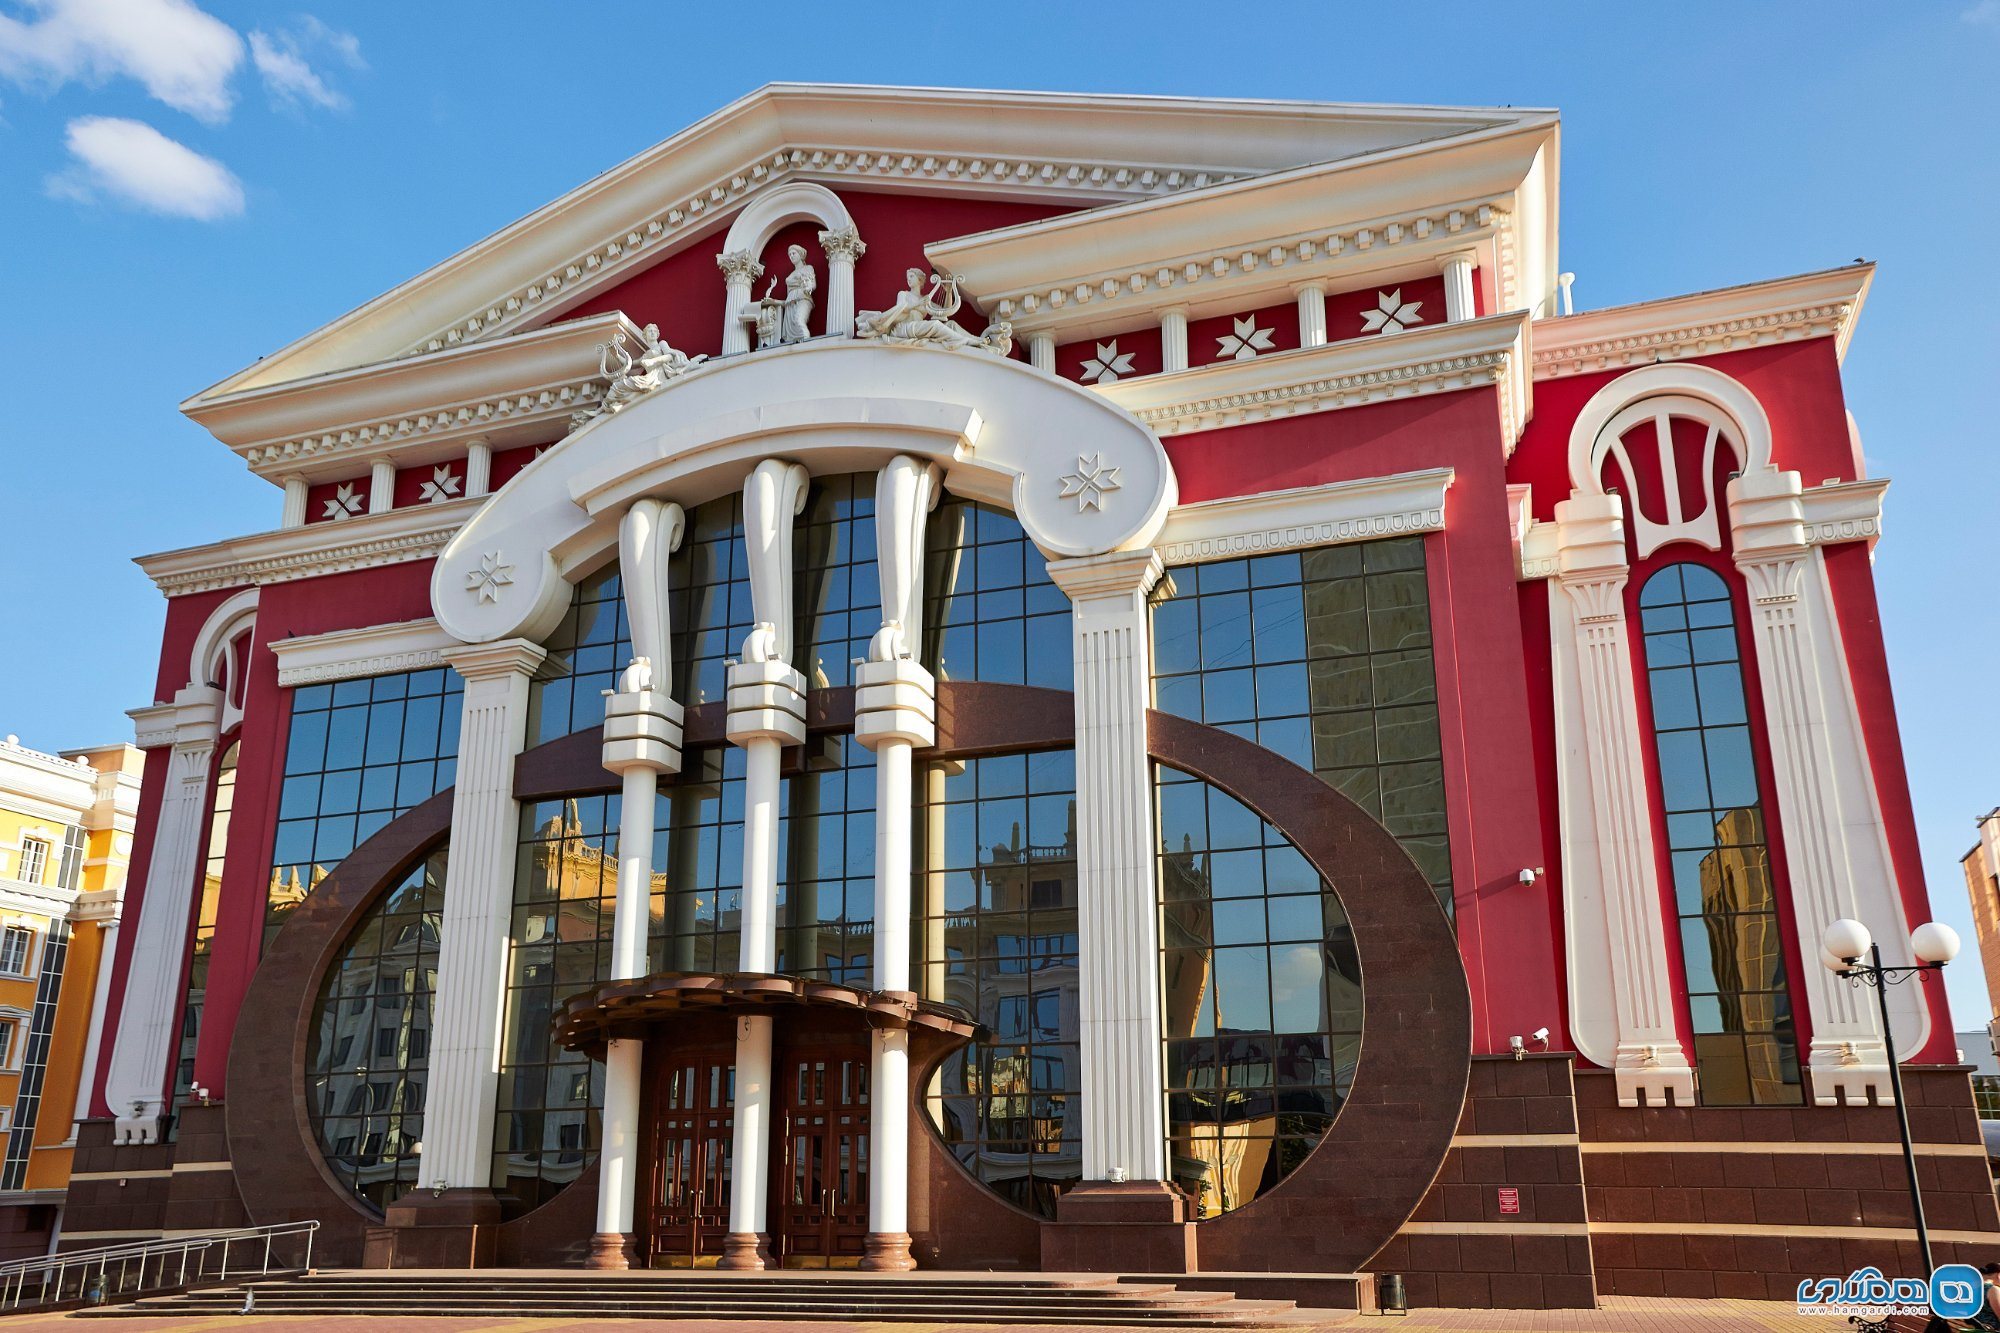 سالن موسیقی و تئاتر دولتی یاشف Yaushev State Music Theater